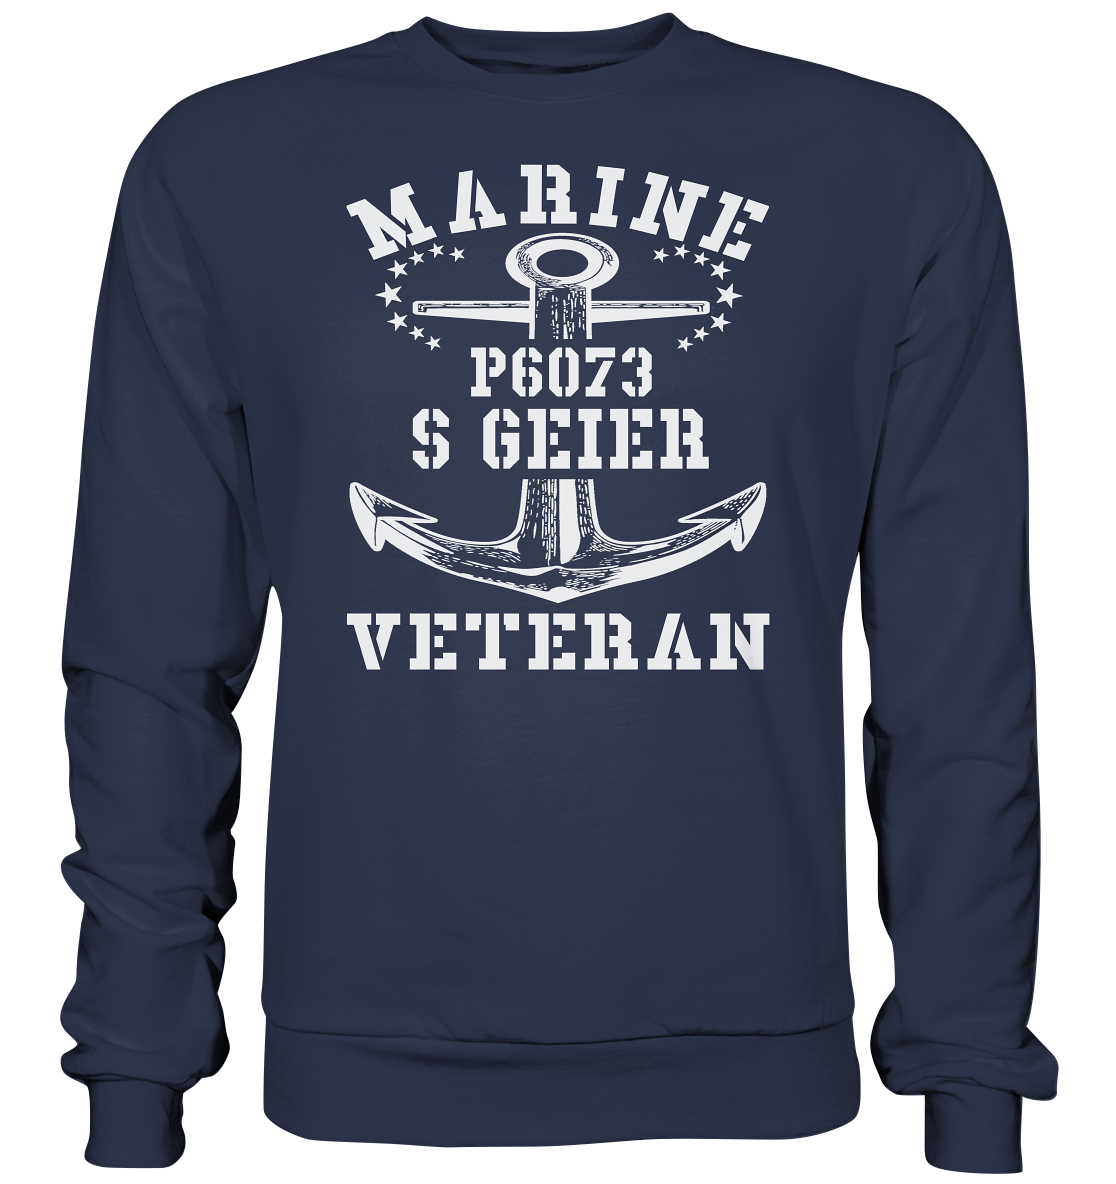 P6073 S GEIER Marine Veteran - Premium Sweatshirt